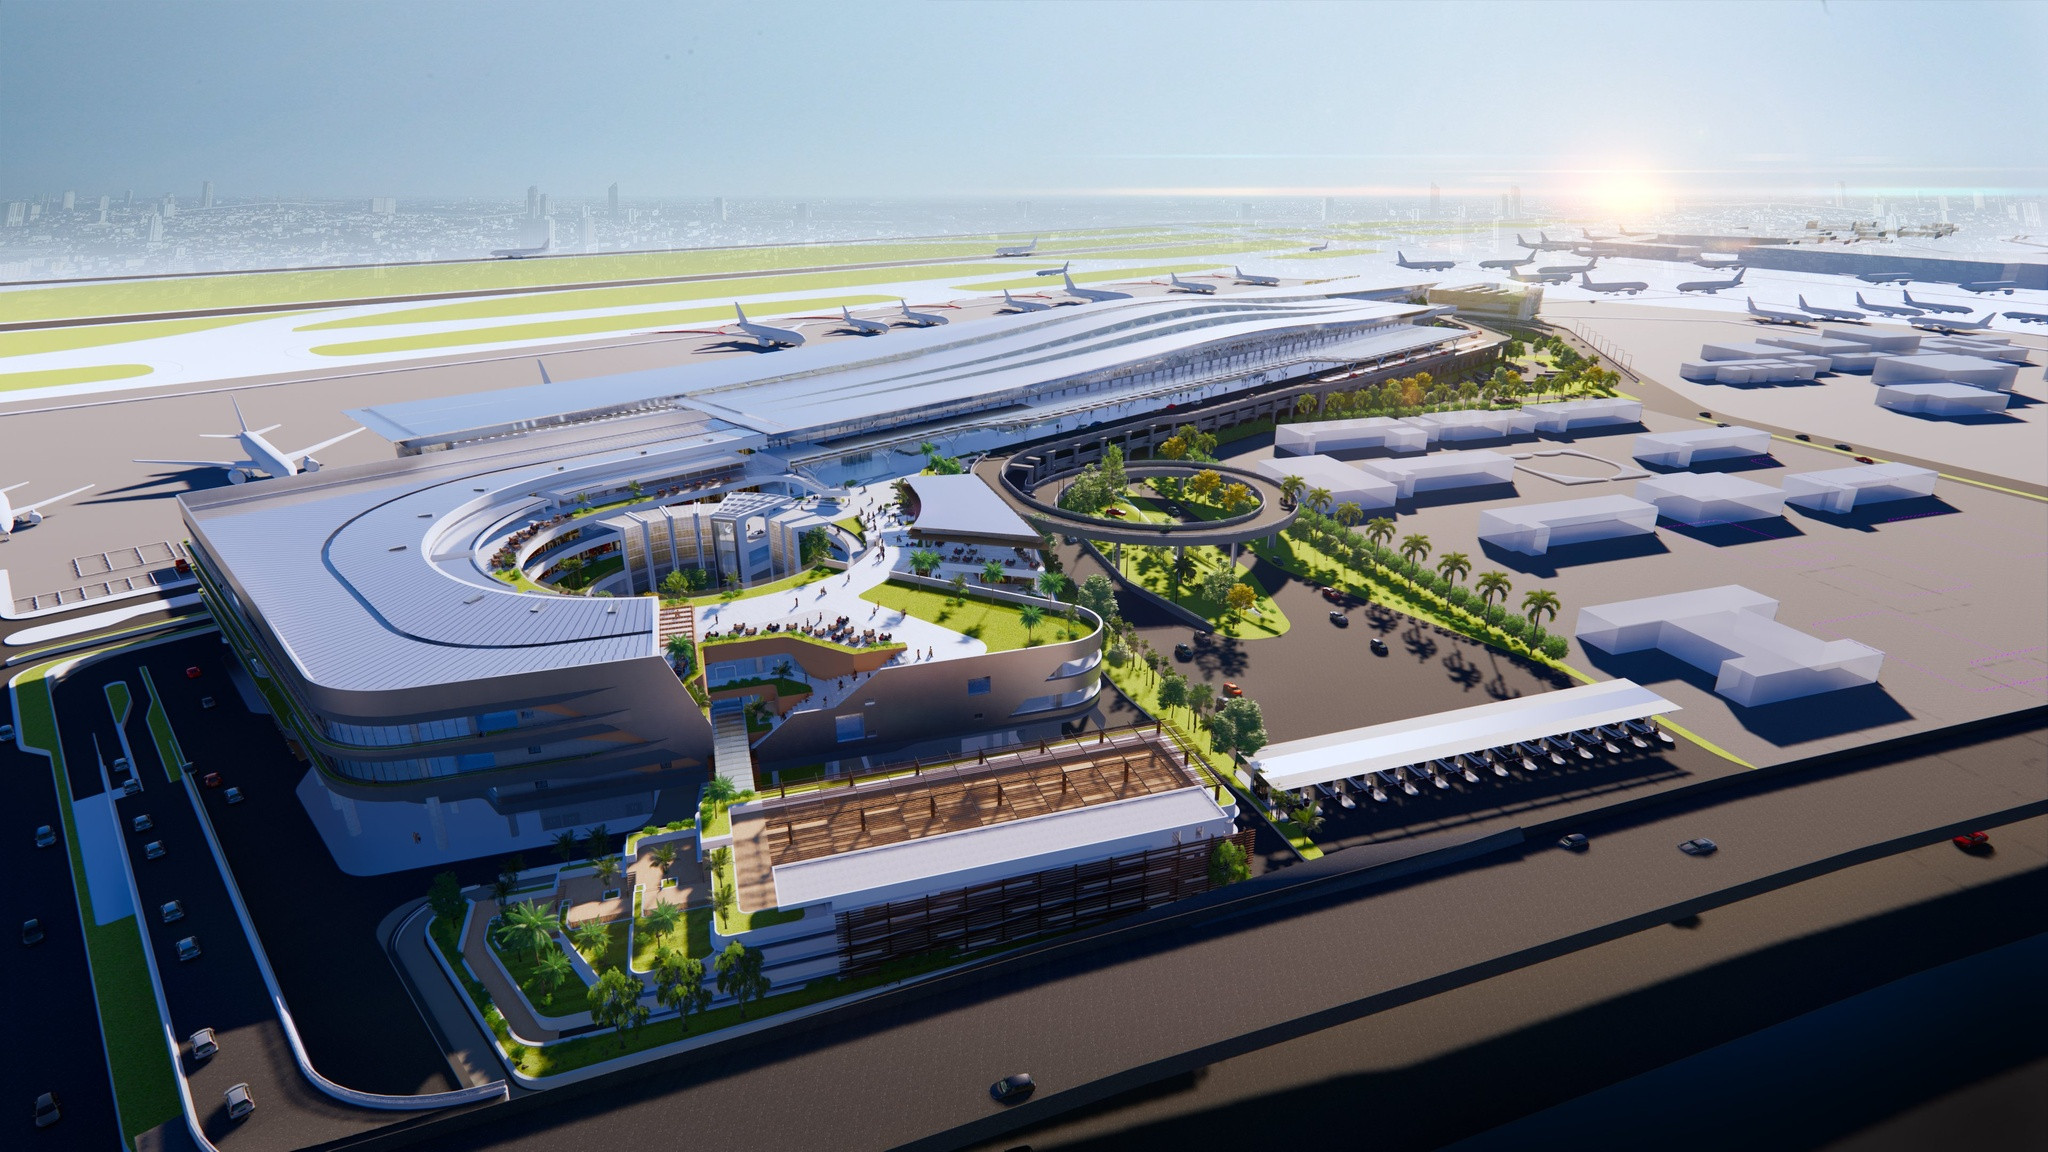 Bàn giao 27,85 ha đất quốc phòng để mở rộng sân bay Tân Sơn Nhất